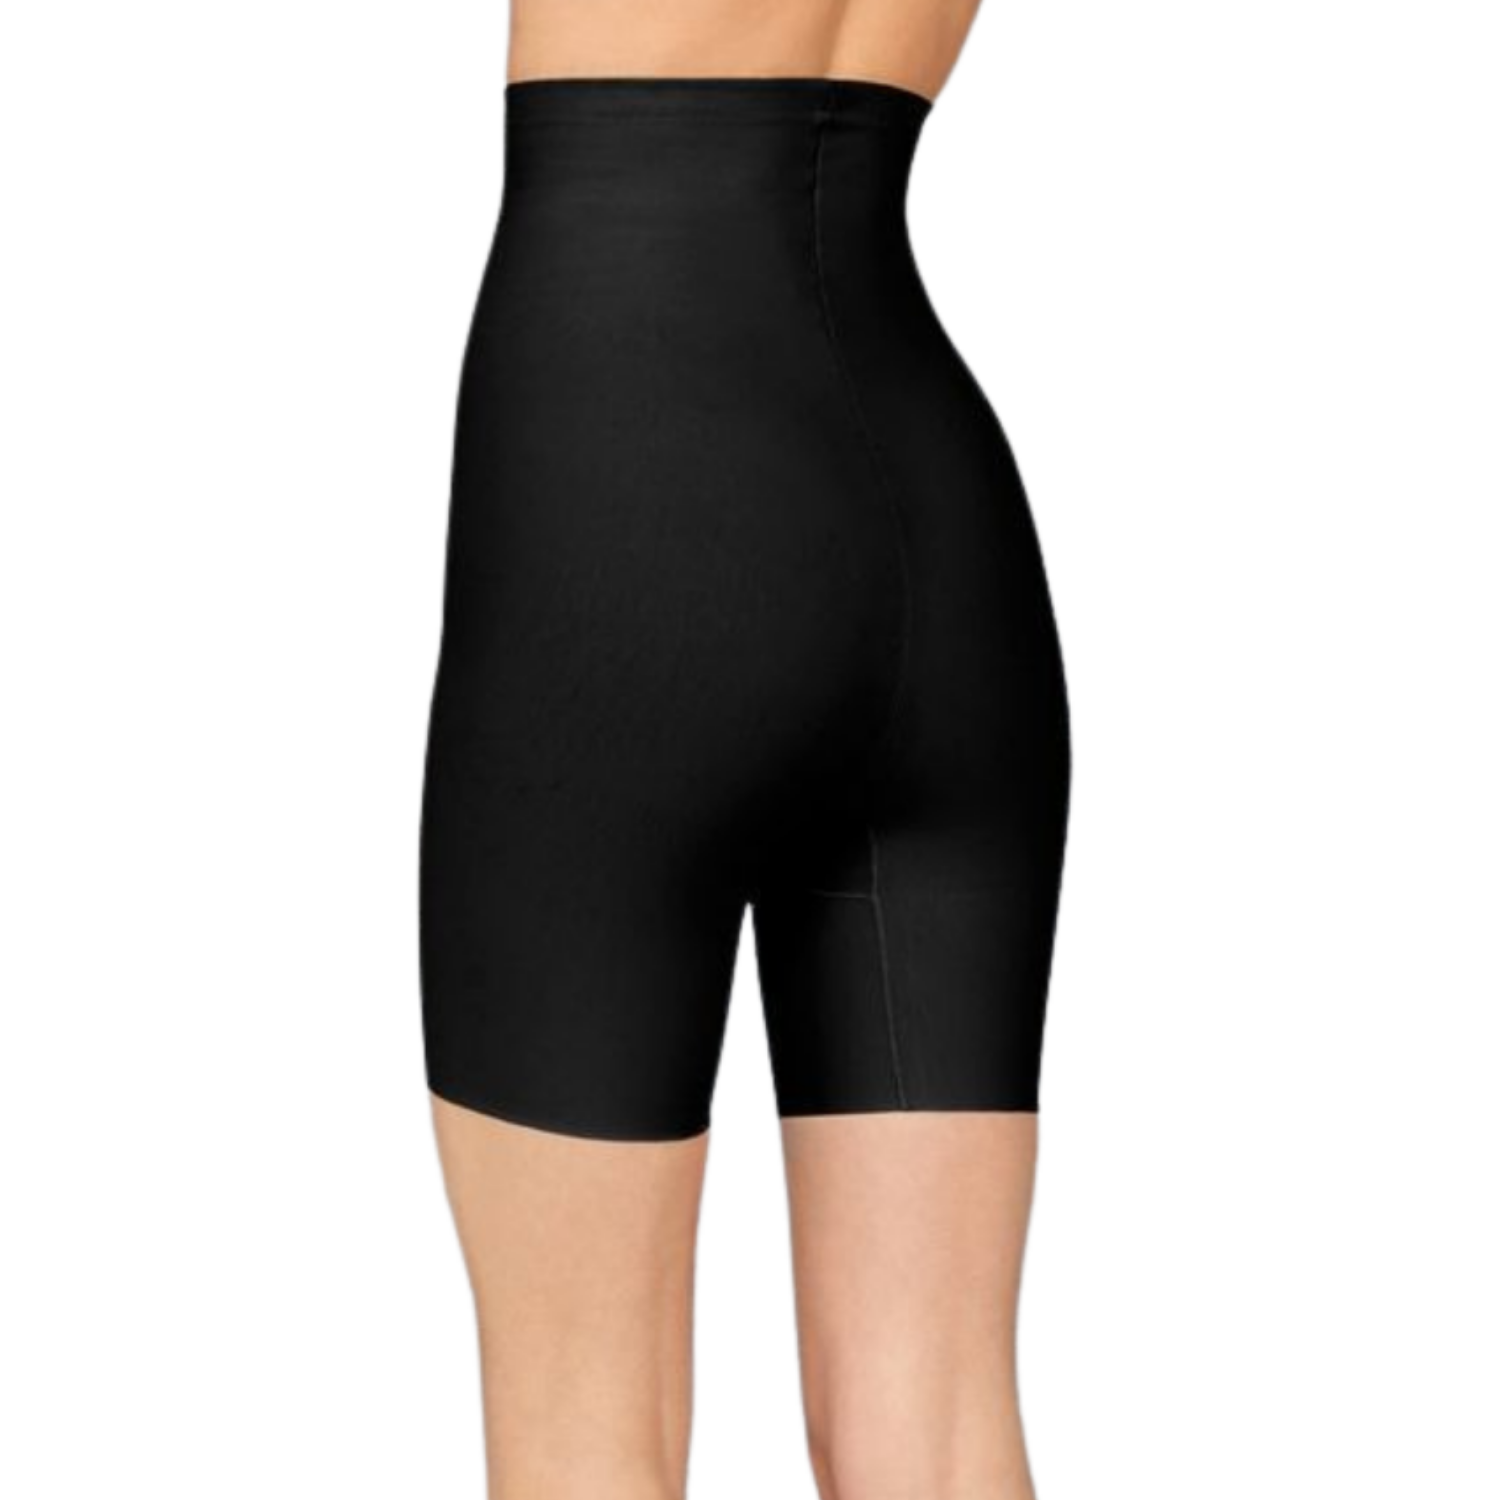 Корректирующее белье черного цвета Doreanse ladies Shapewear 5900 - купить  недорого в интернет-магазине